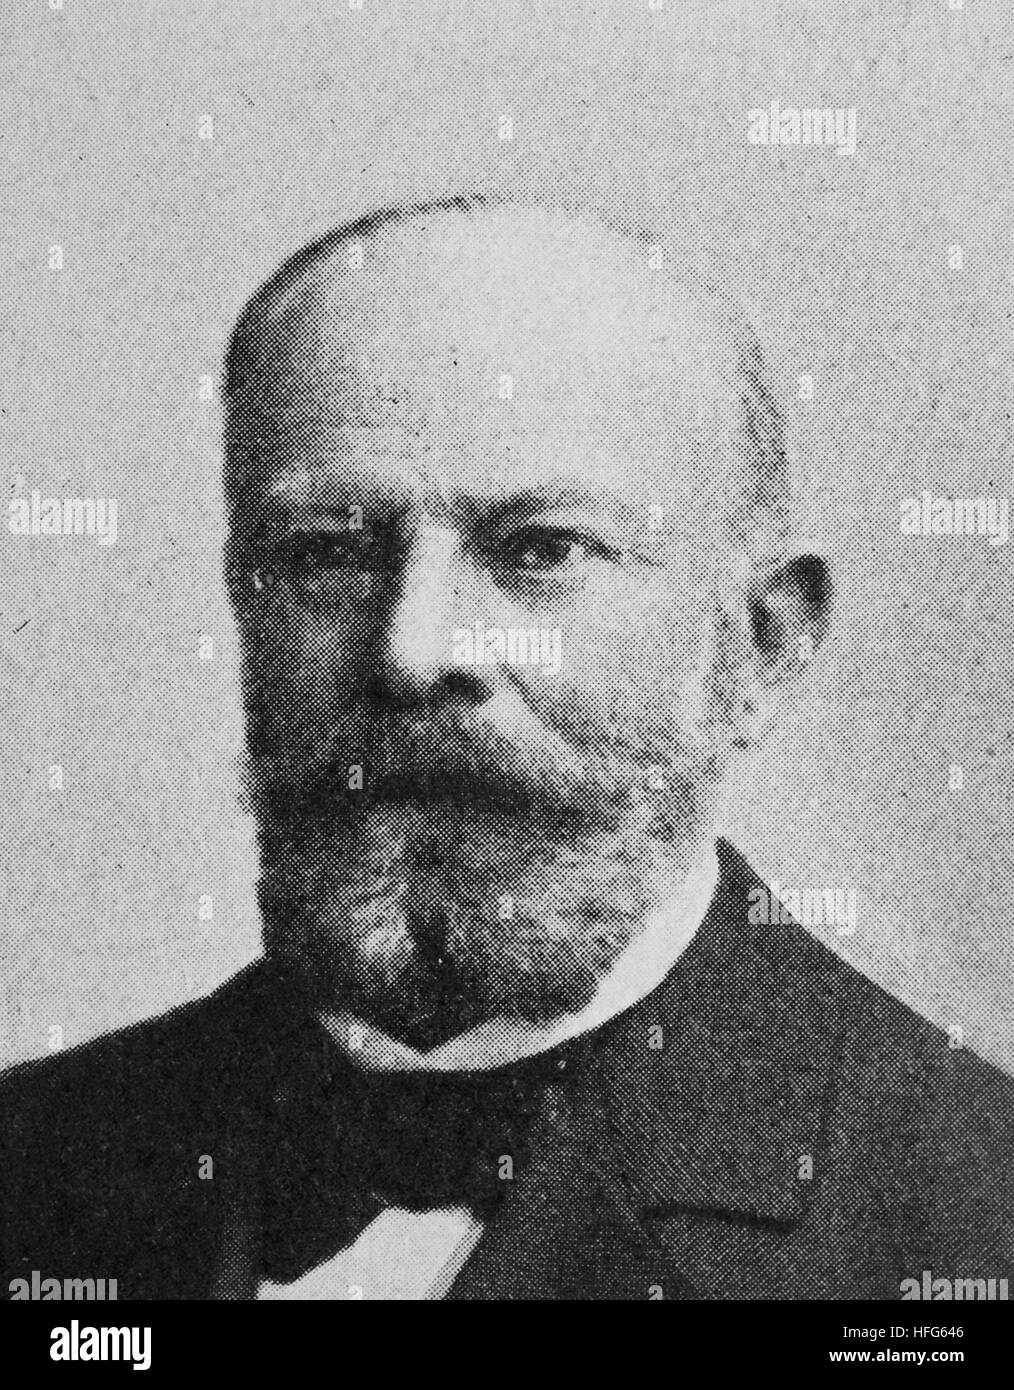 Dagobert von Gerhardt Gerhard von Amyntor, 1831-1910, war ein deutscher Soldat, Dichter und Romancier. Reproduktion Foto aus dem Jahr 1895, digital verbessert Stockfoto